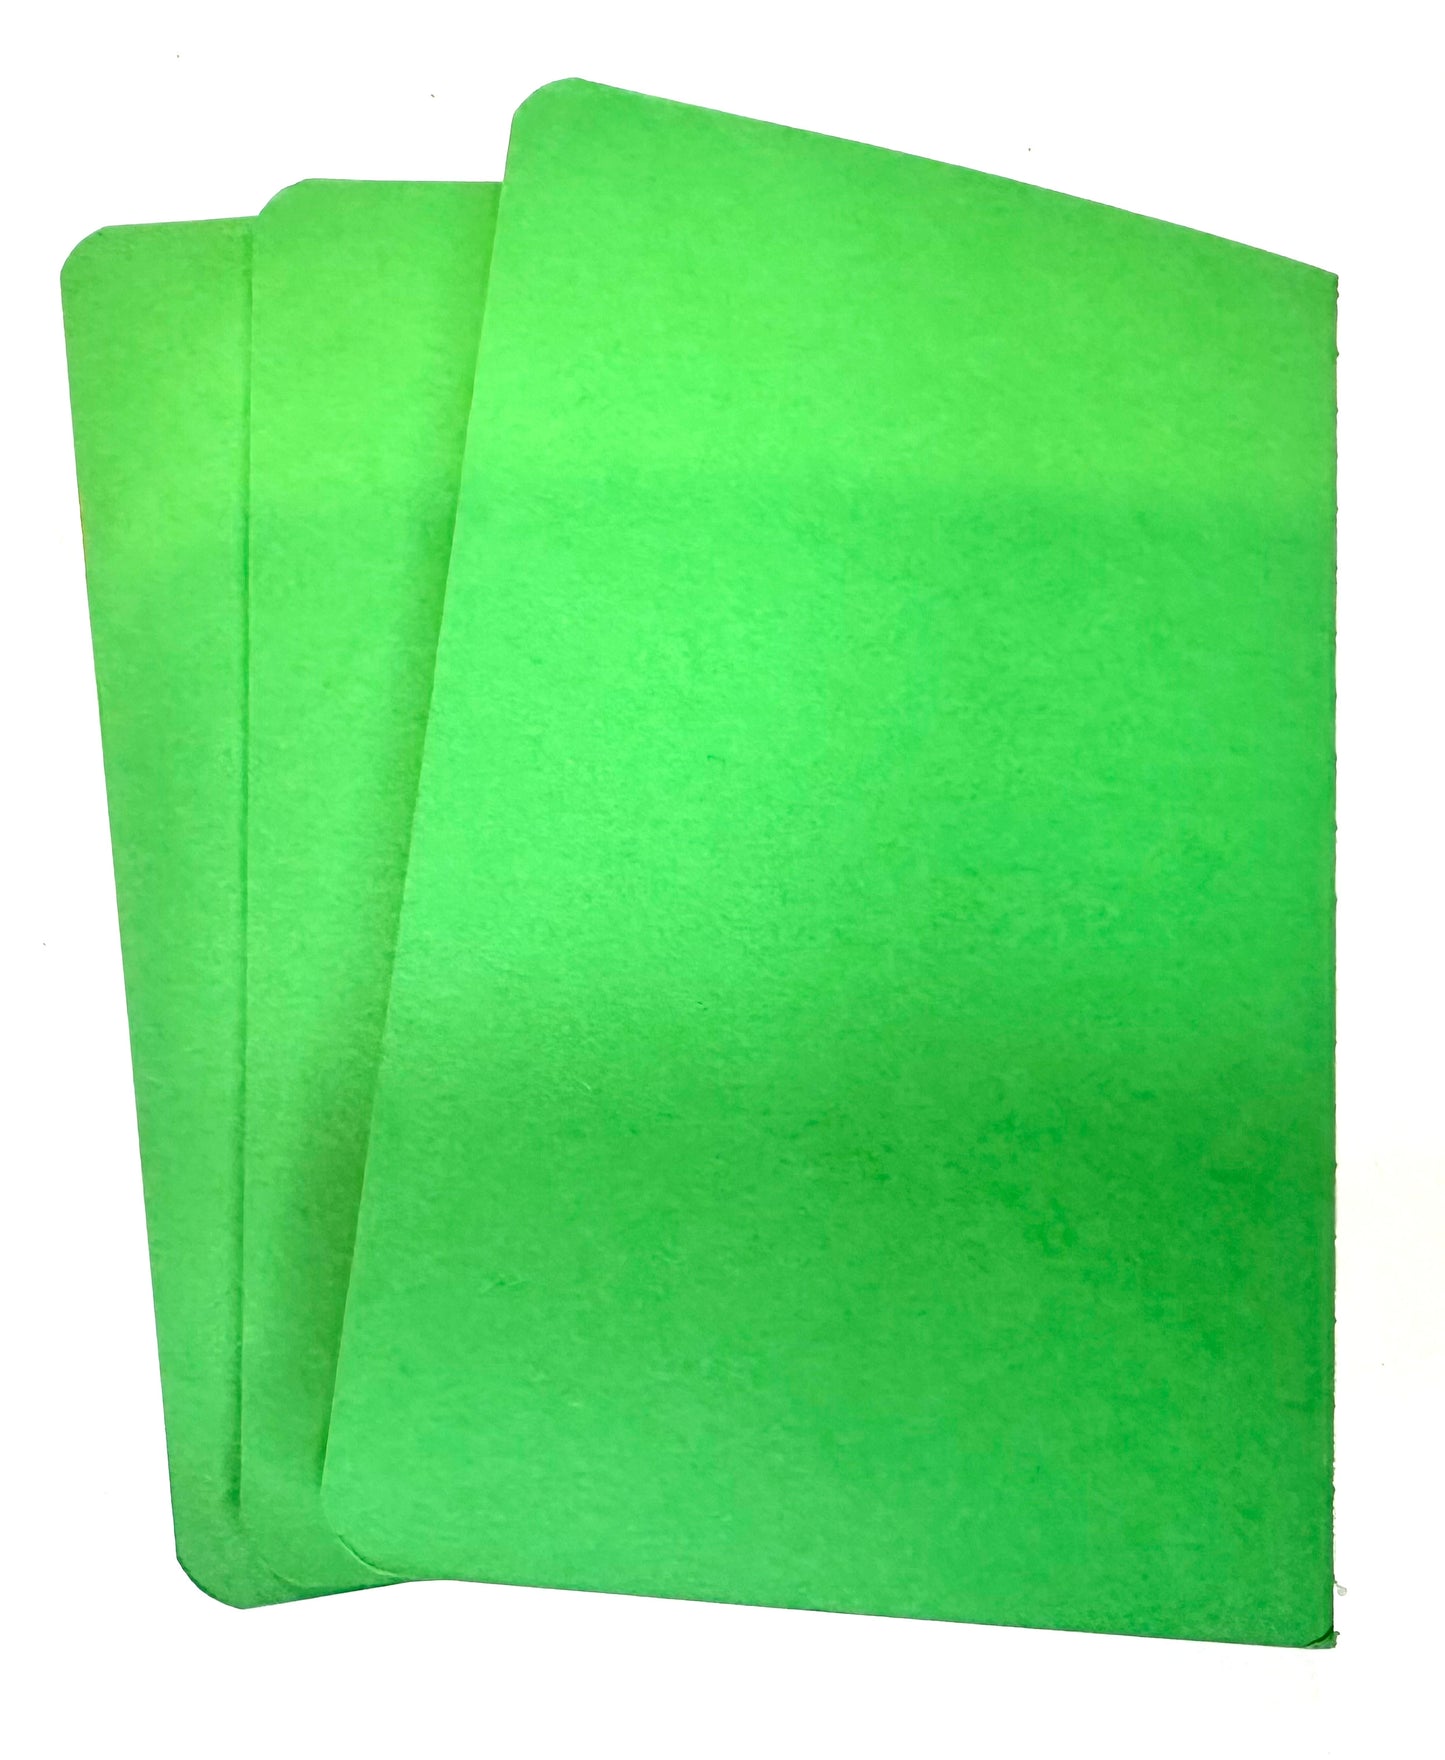 Green MINI NOTEBOOKS set of 3 Jungle Theme